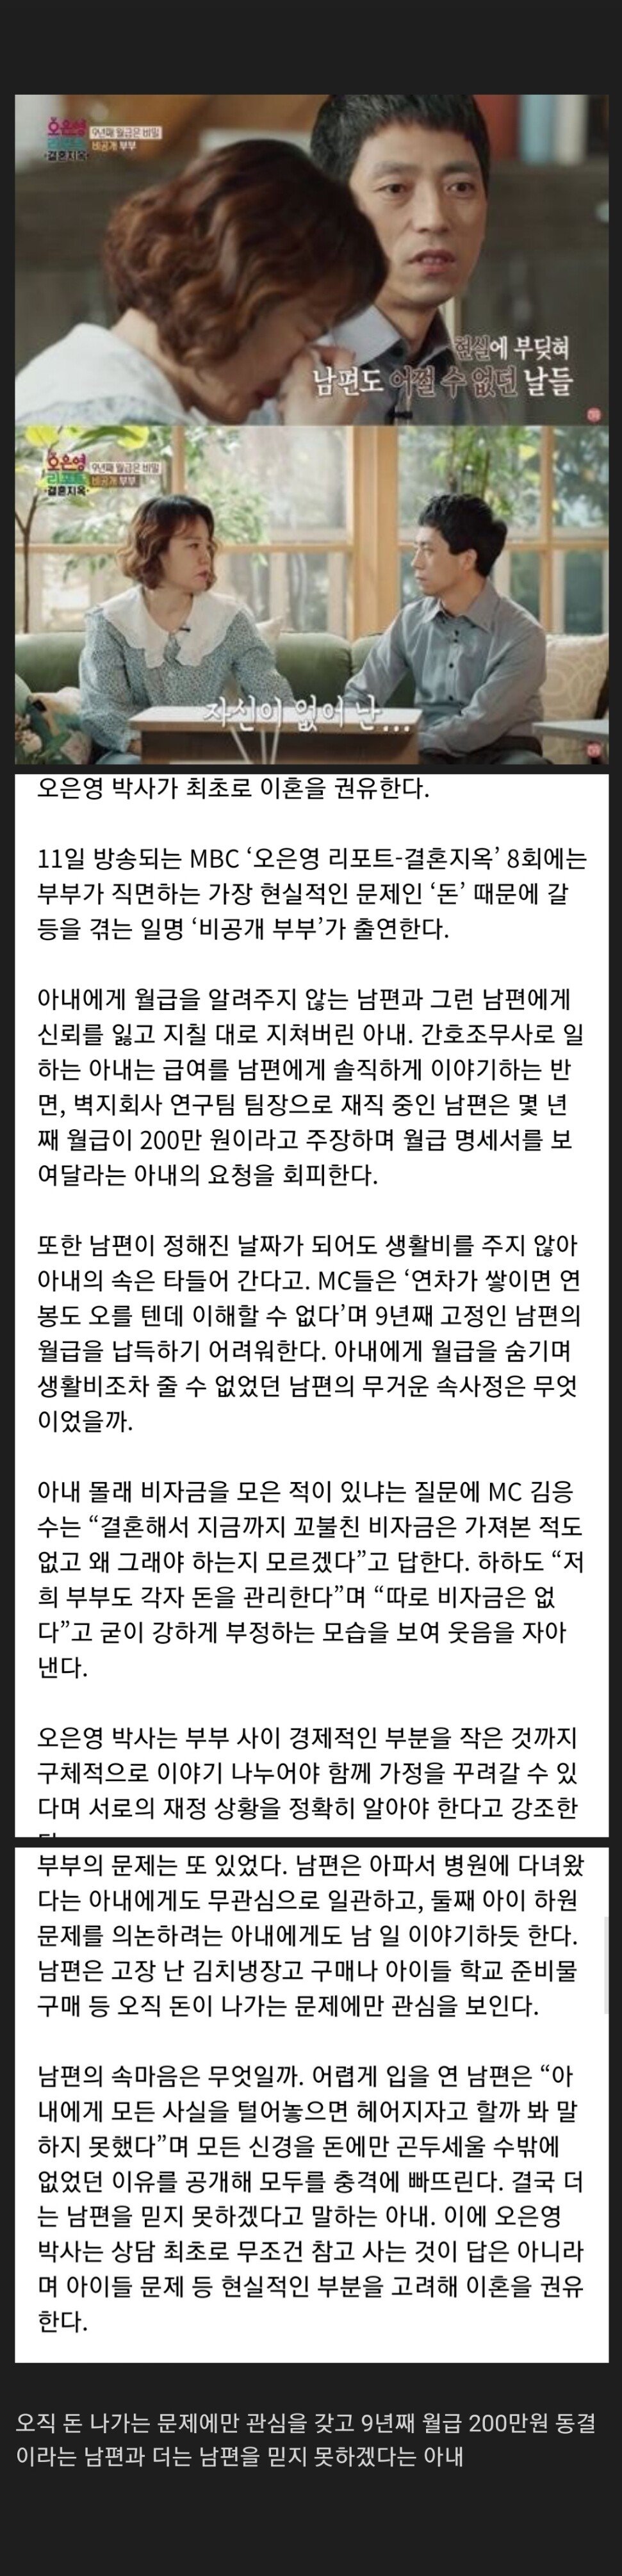 오은영 방송최초 이혼 권유.. 남편 월급 9년째 200만원